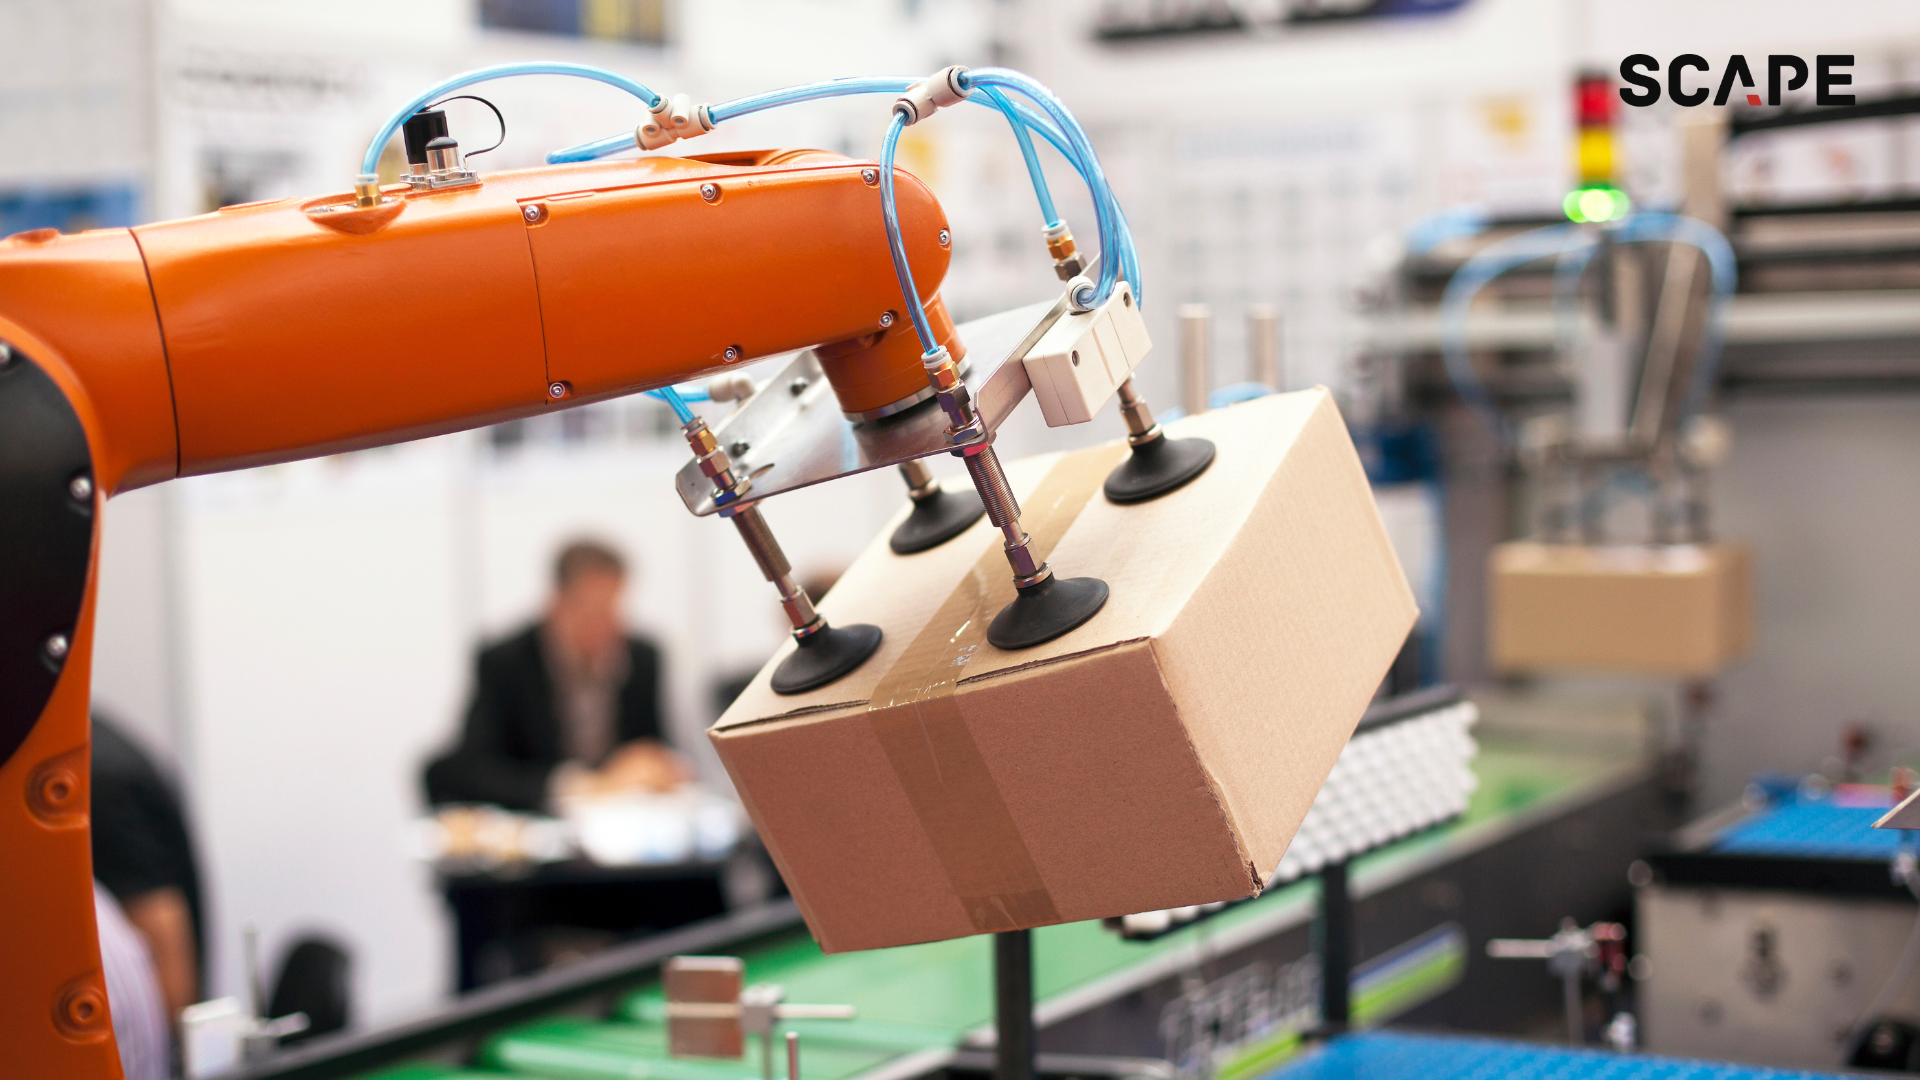 Mögliche SCAPE PackMover-Integration auf einem KUKA Roboter zur Automatisierung des Pakethandlings in der Logistik.